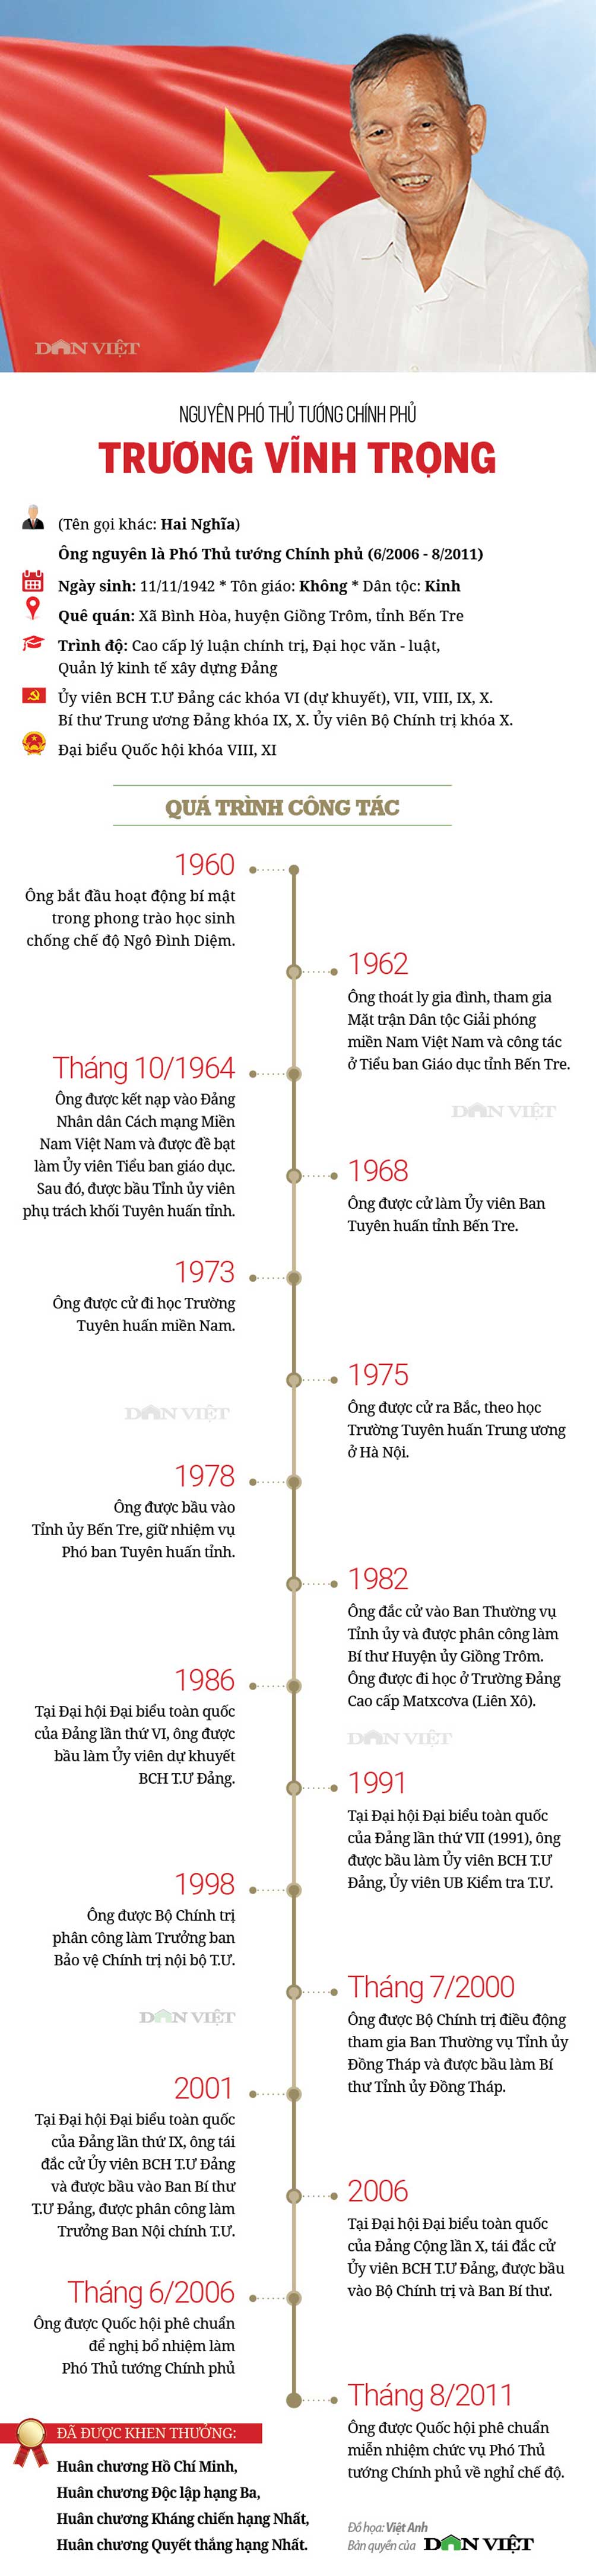 Infographic về sự nghiệp của nguyên Phó Thủ tướng Trương Vĩnh Trọng - 1